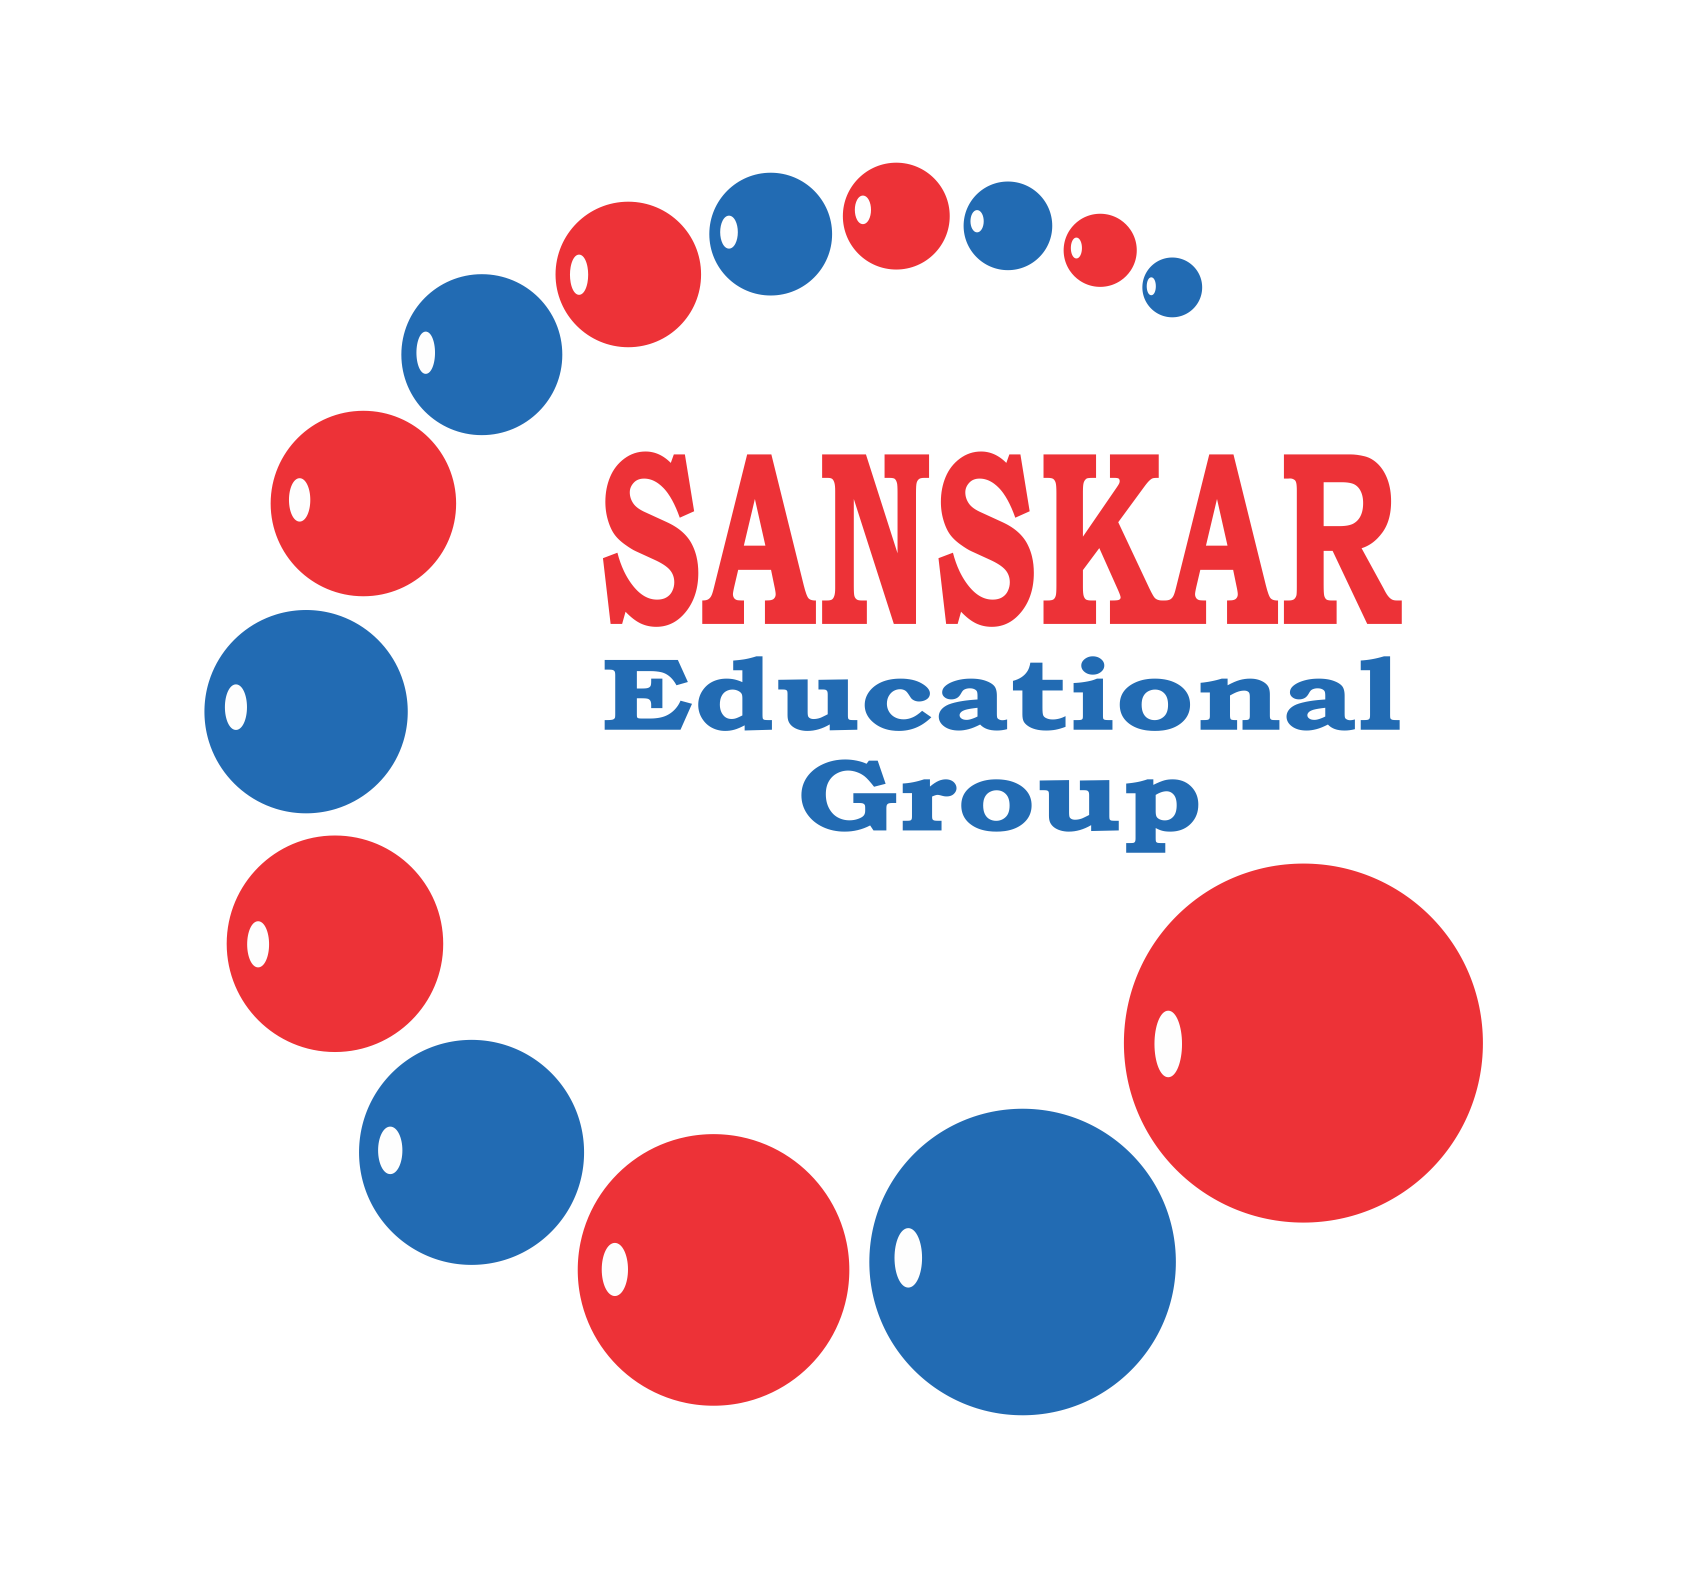 SANSKAR EDUCATIONAL GROUP